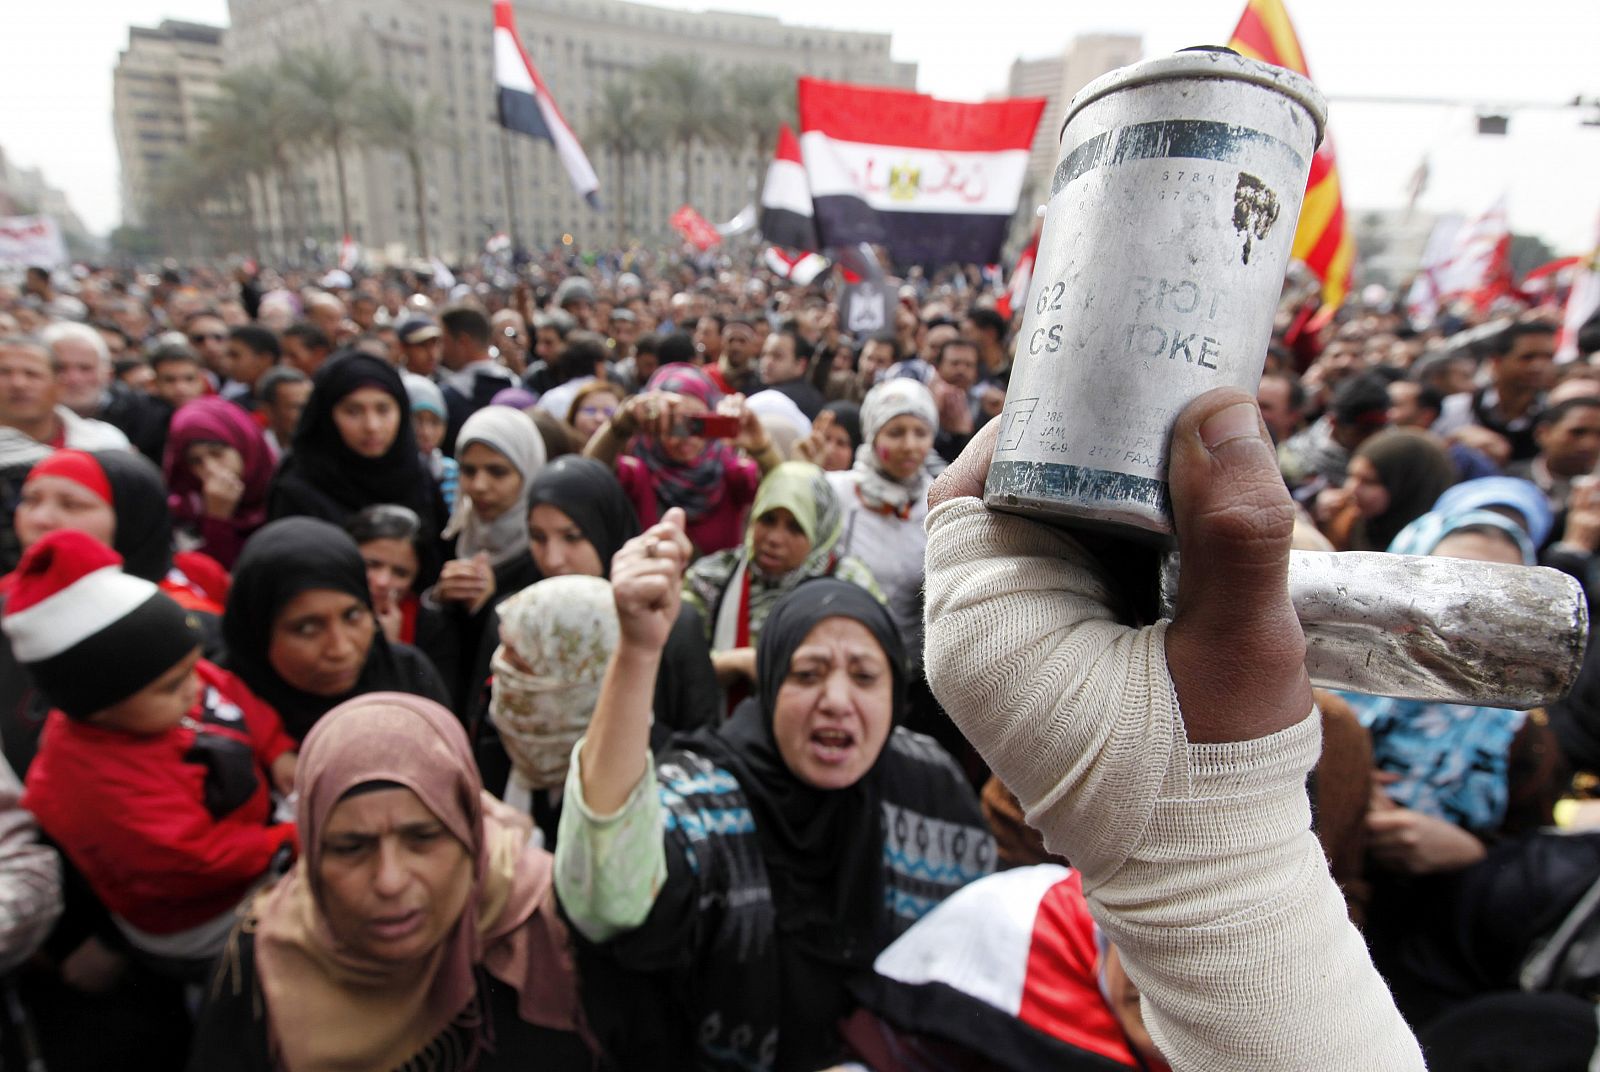 Bote de gas lacrimógeno lanzado por la policía egipcia